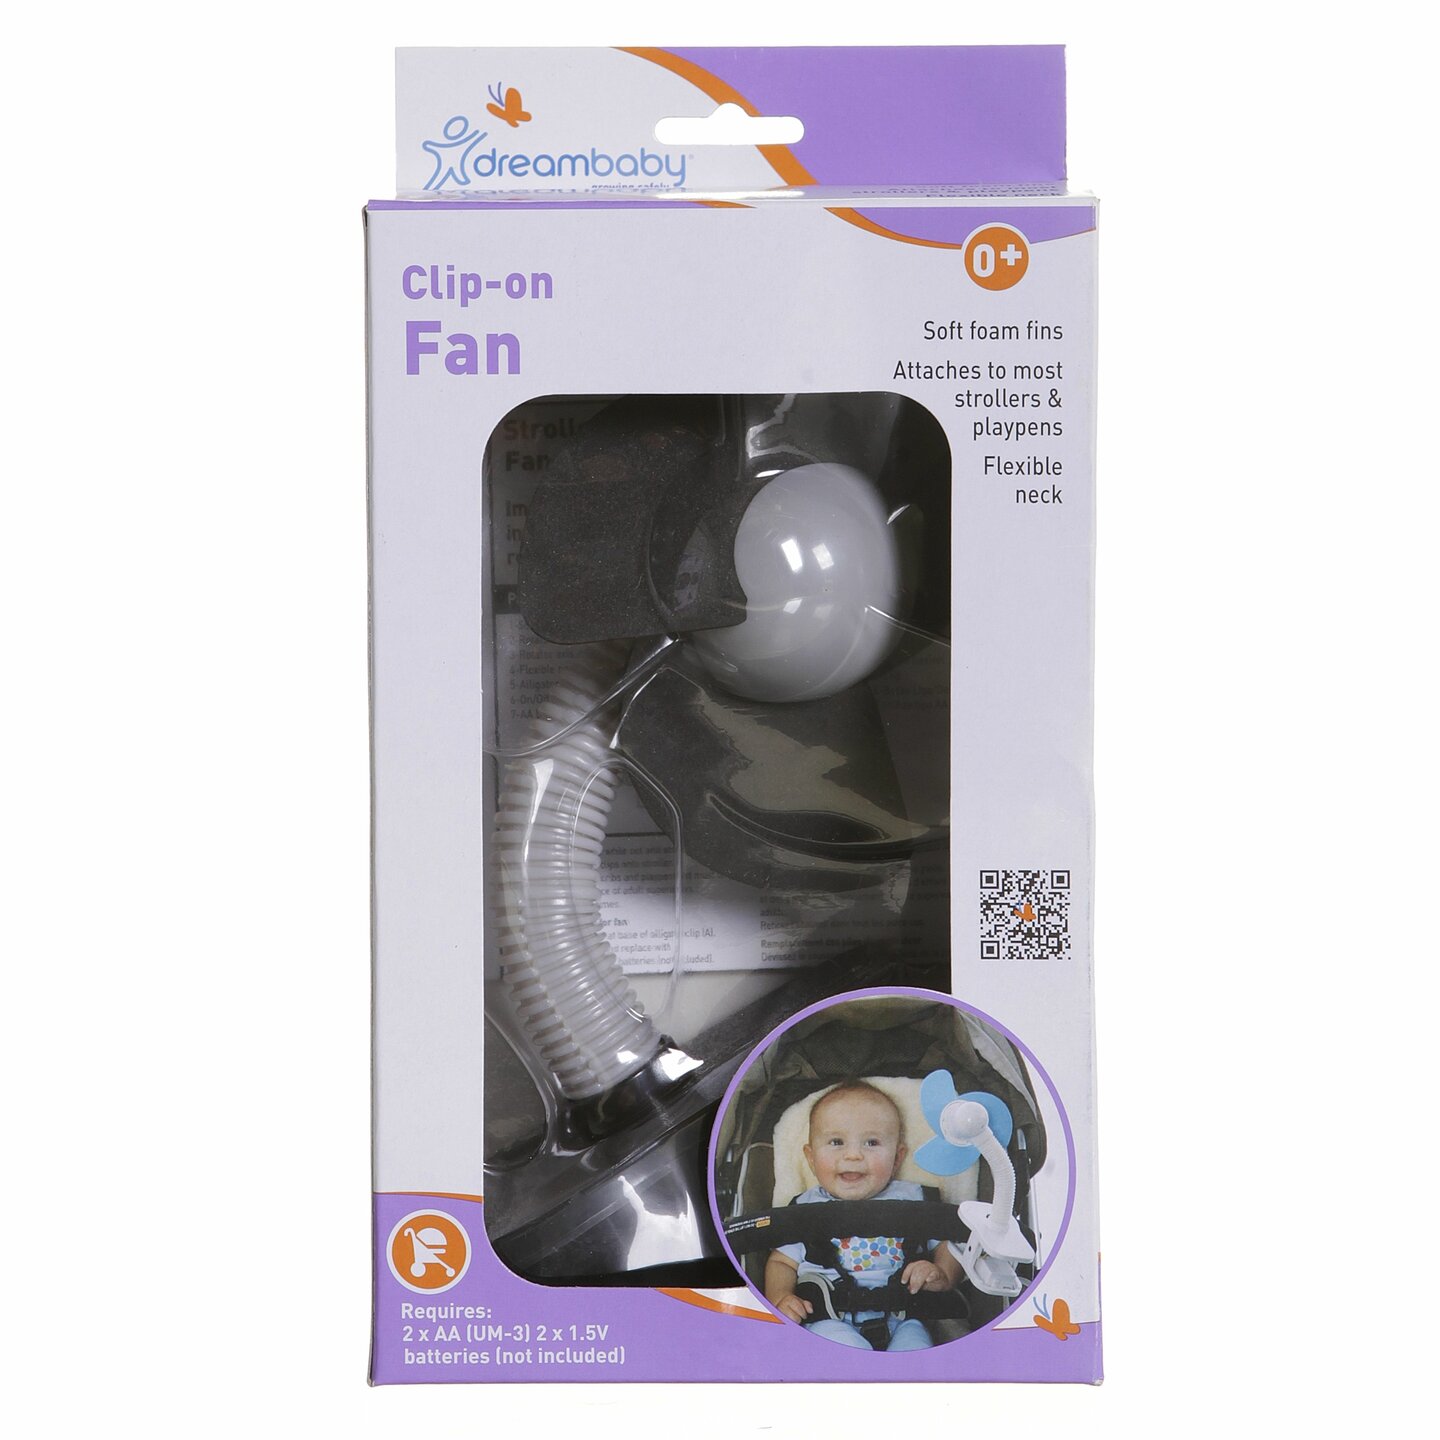 Dreambaby kinderwagen ventilator | Zwart